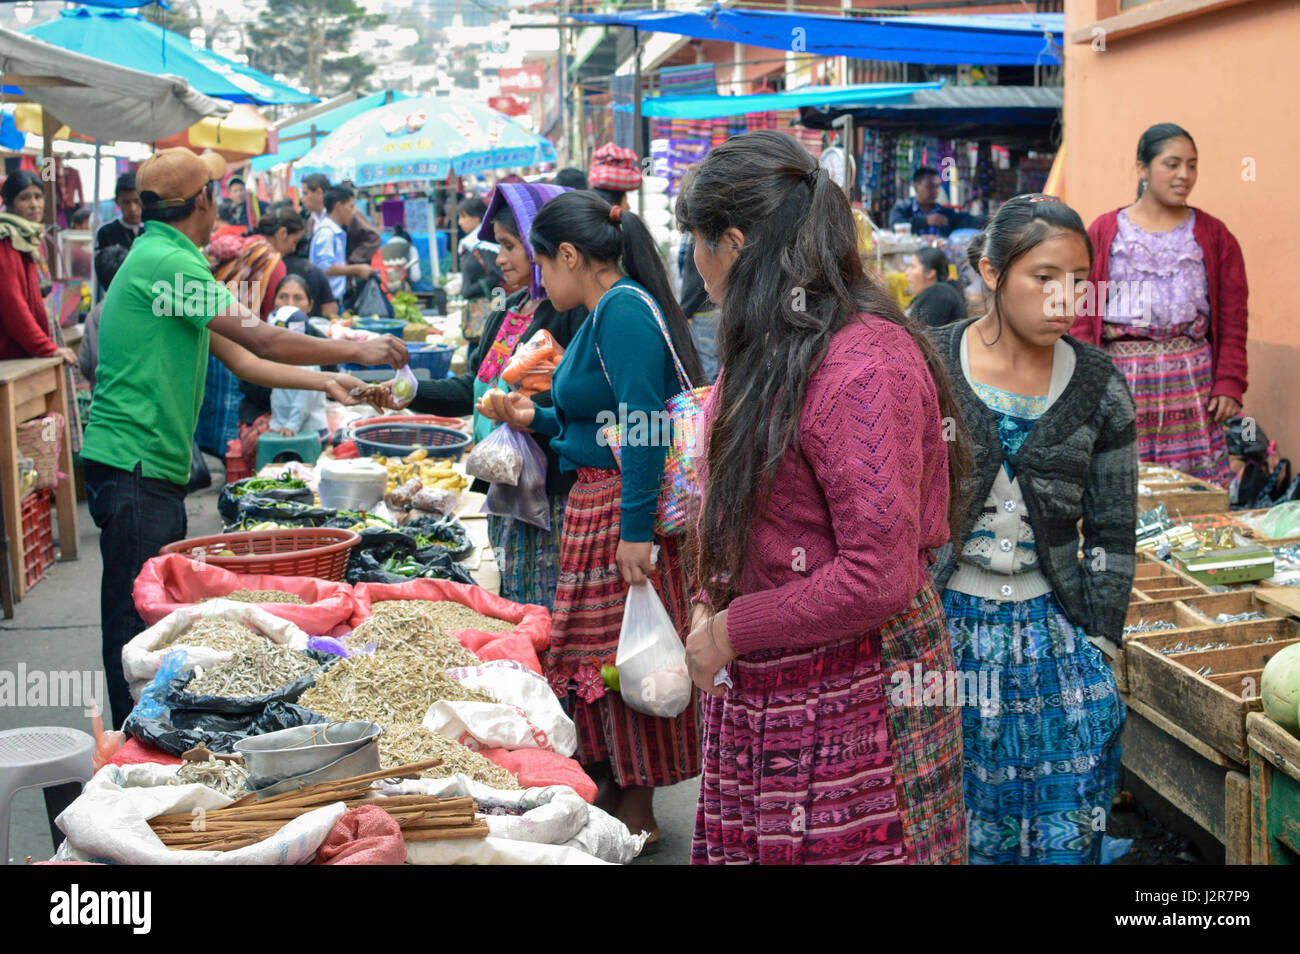 Totonicapan, Guatemala - 10 Février 2015 : les gens Maya shop au grand marché traditionnel d'une petite ville coloniale de Totonicapan au Guatemala. Centr Banque D'Images